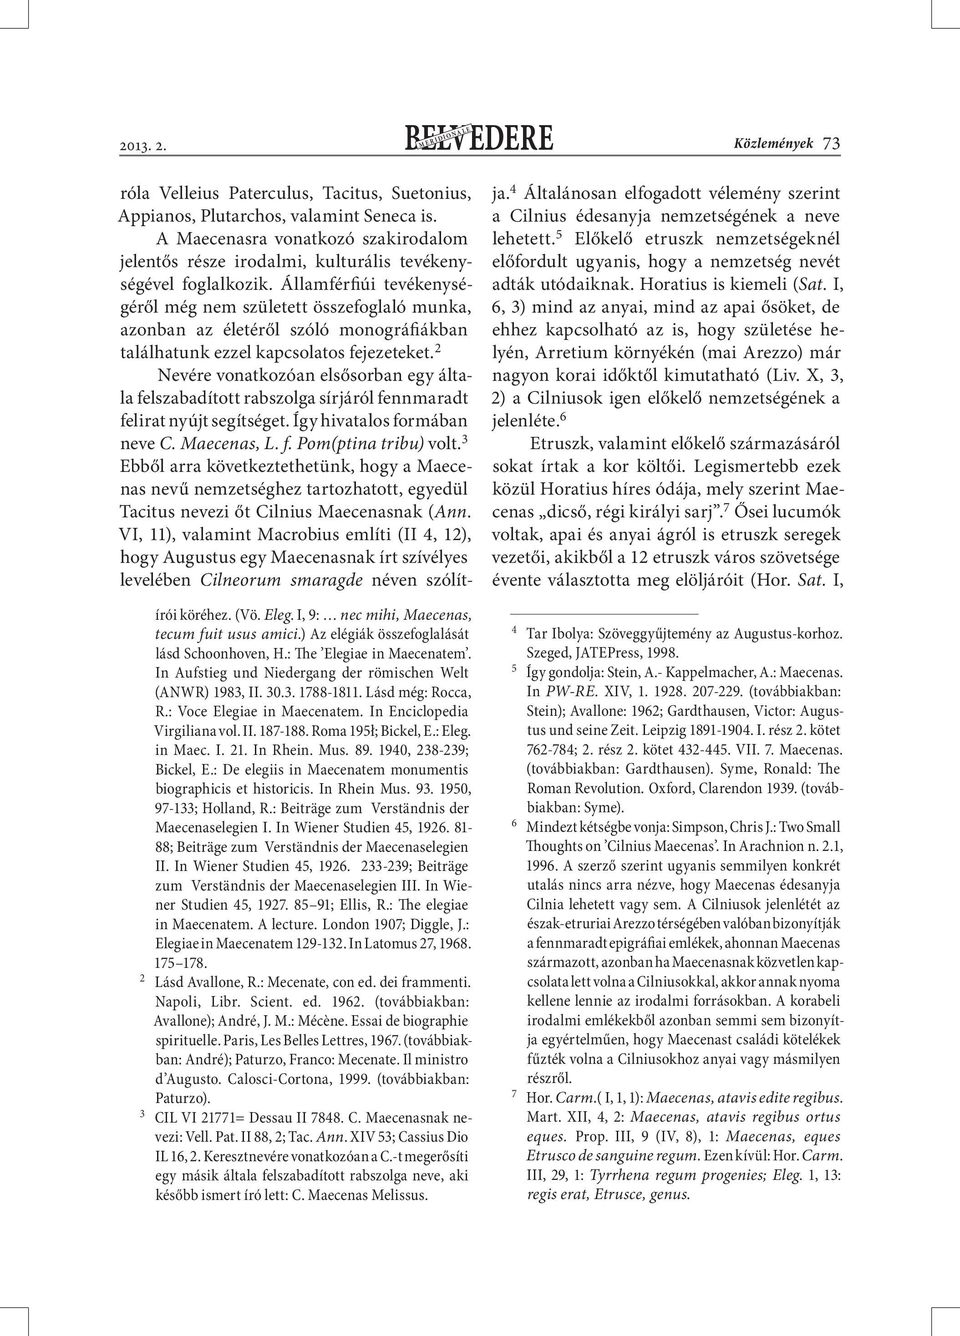 : Eleg. in Maec. I. 21. In Rhein. Mus. 89. 1940, 238-239; Bickel, E.: De elegiis in Maecenatem monumentis biographicis et historicis. In Rhein Mus. 93. 1950, 97-133; Holland, R.